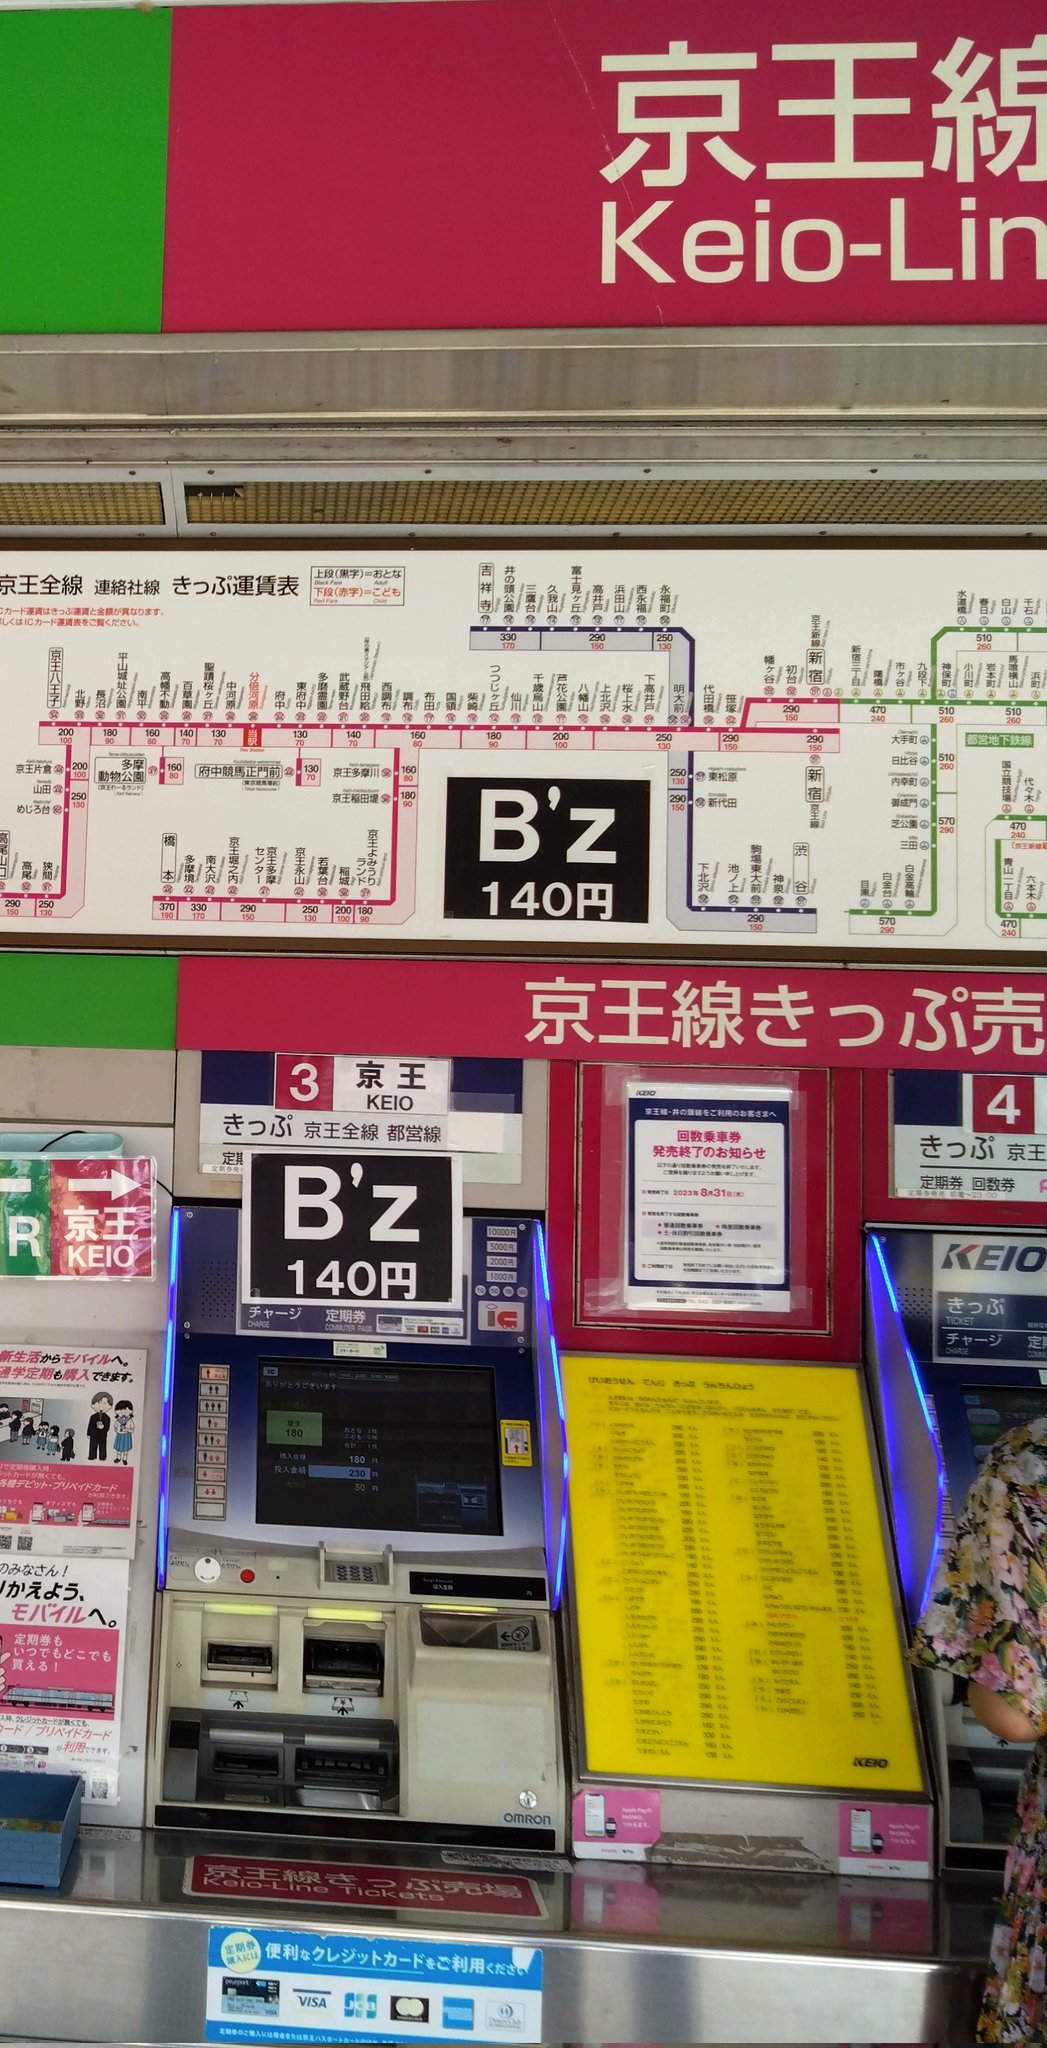 京王線分倍河原駅に貼られた「B'z 140円」の案内の画像